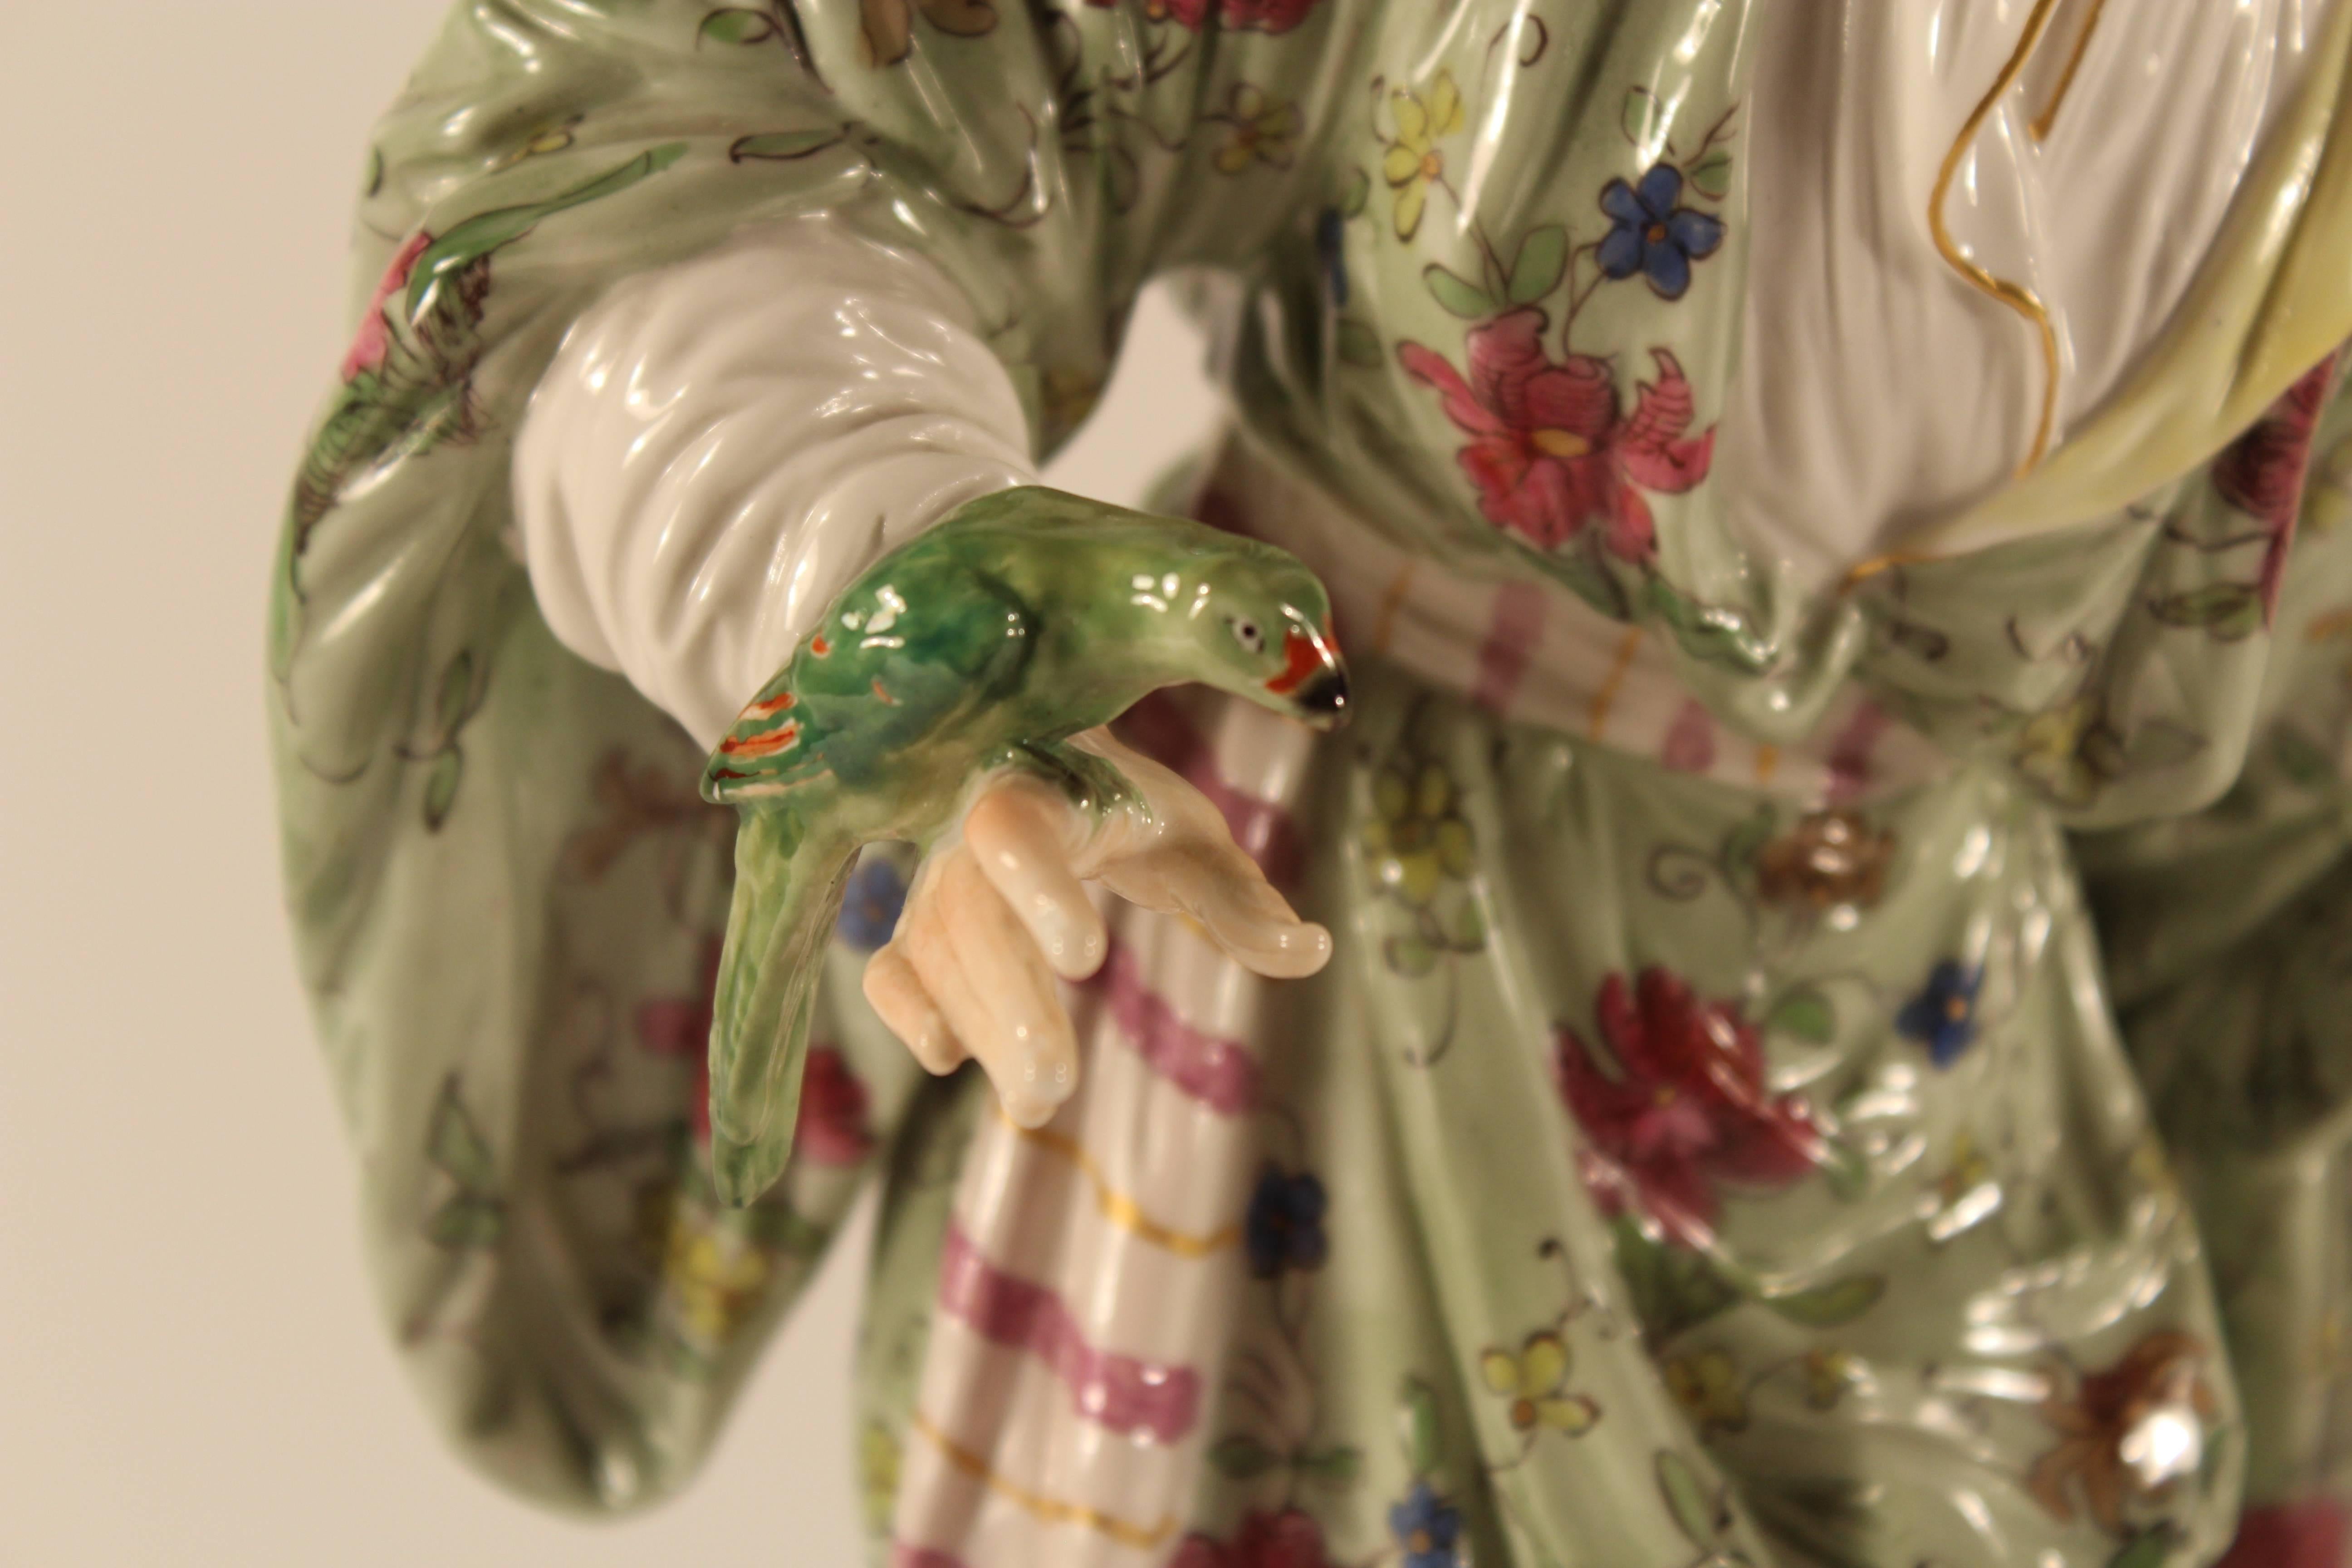 Femme avec un perroquet, KPM Berlin, 19ème siècle...
Belle figurine d'une femme debout en robe orientale tenant un perroquet dans sa main droite. 
Peint de façon naturaliste avec la marque KPM cuite sur le fond.
